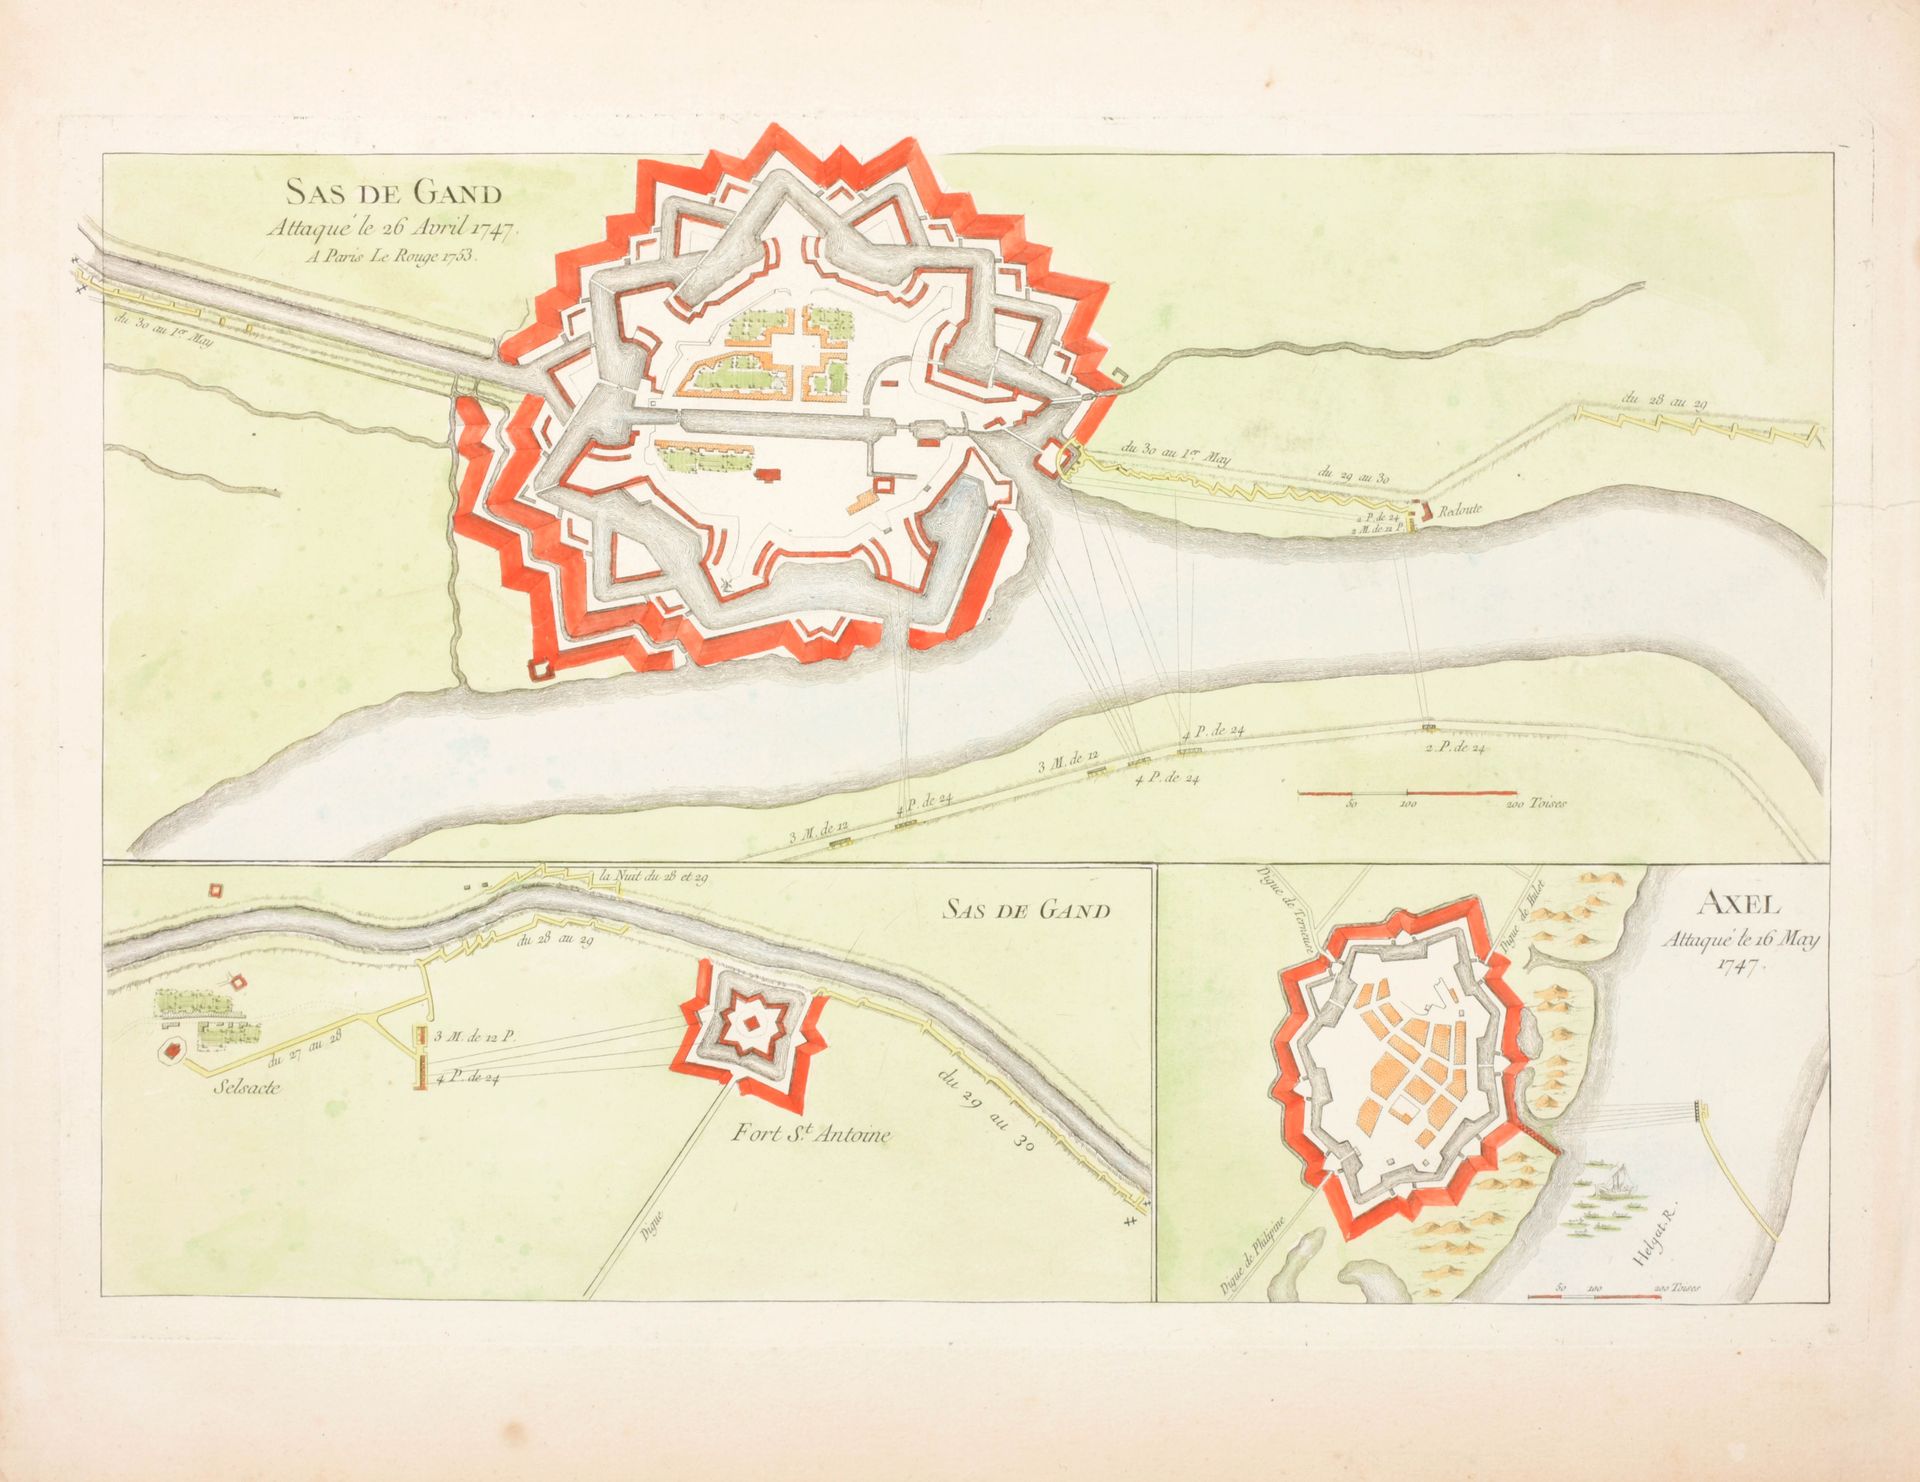 [Gent] Mapa de la ciudad y la ciudadela de Gante

Kopergravure (48 x 60 cm) door&hellip;